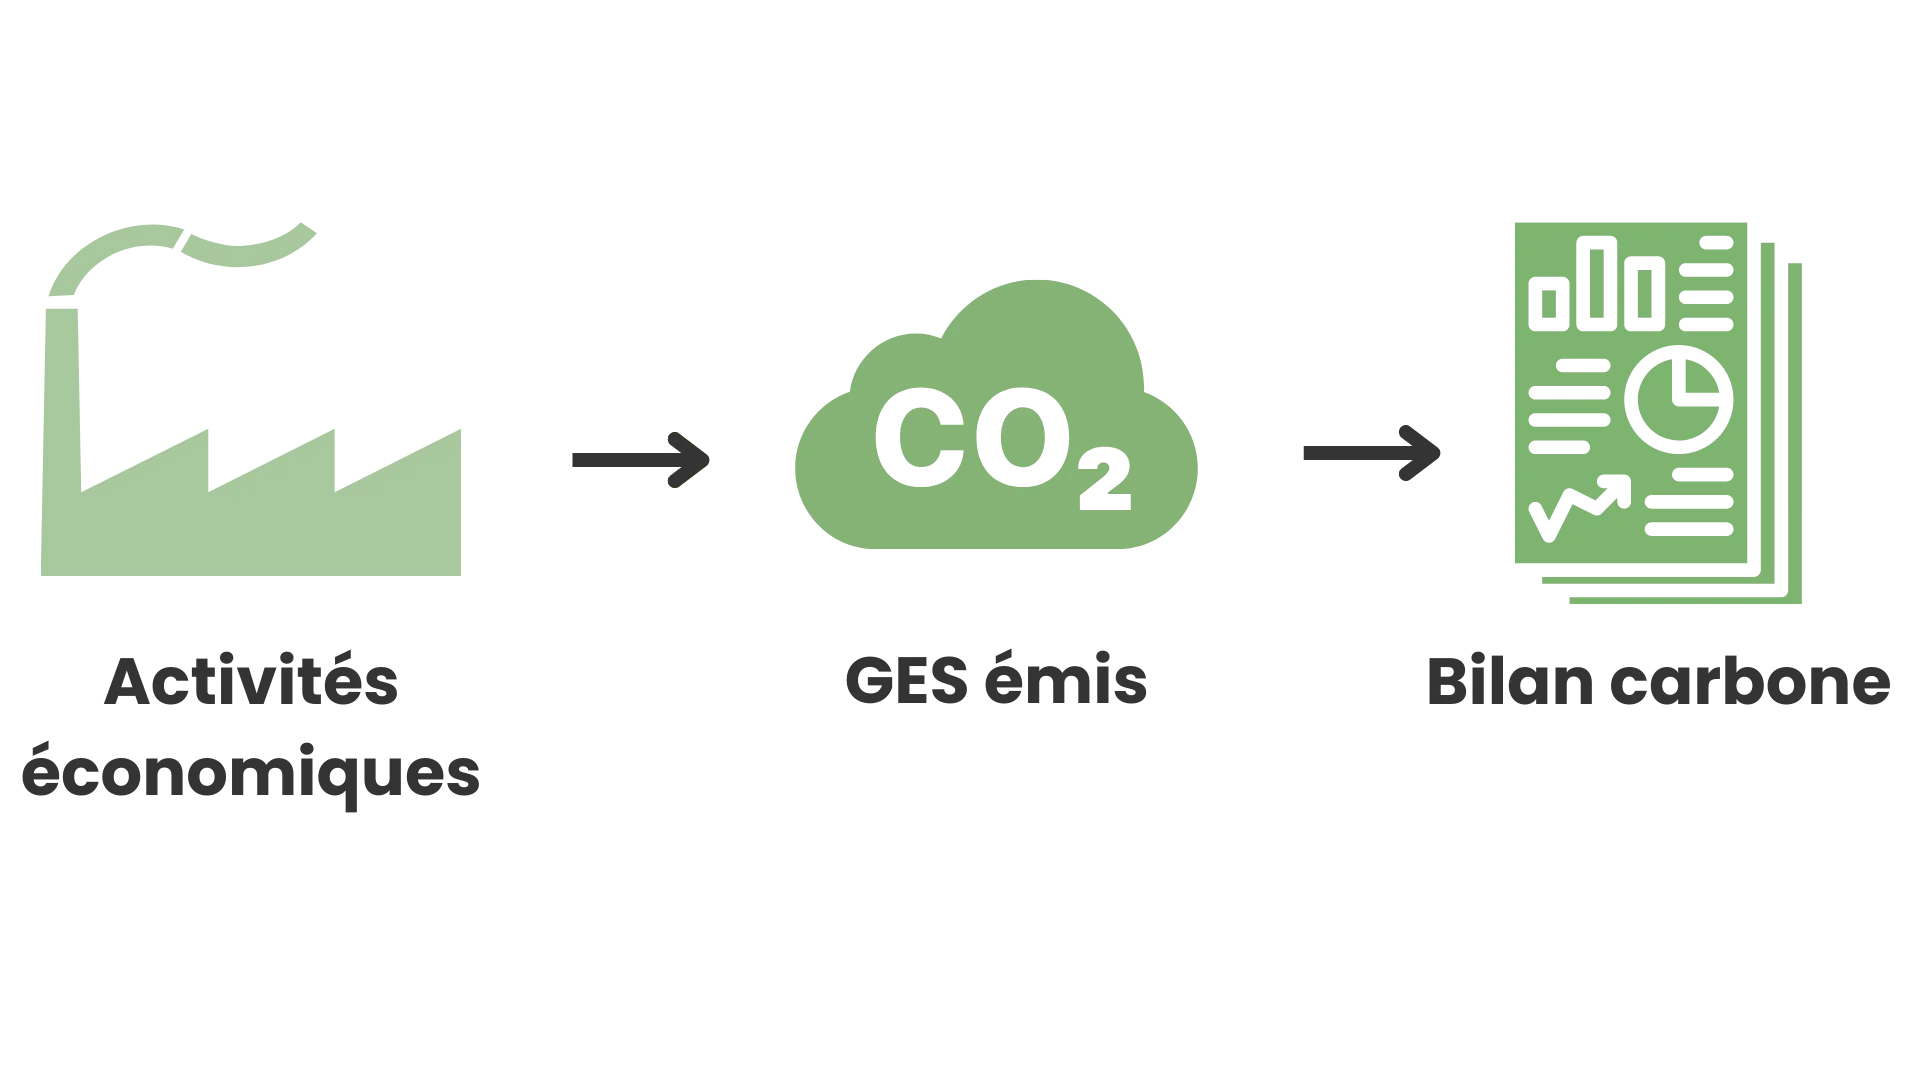 Le bilan carbone a pour objectif de dresser l'inventaire des émissions de GES d'une entreprise sur l'ensemble de sa chaîne de valeur